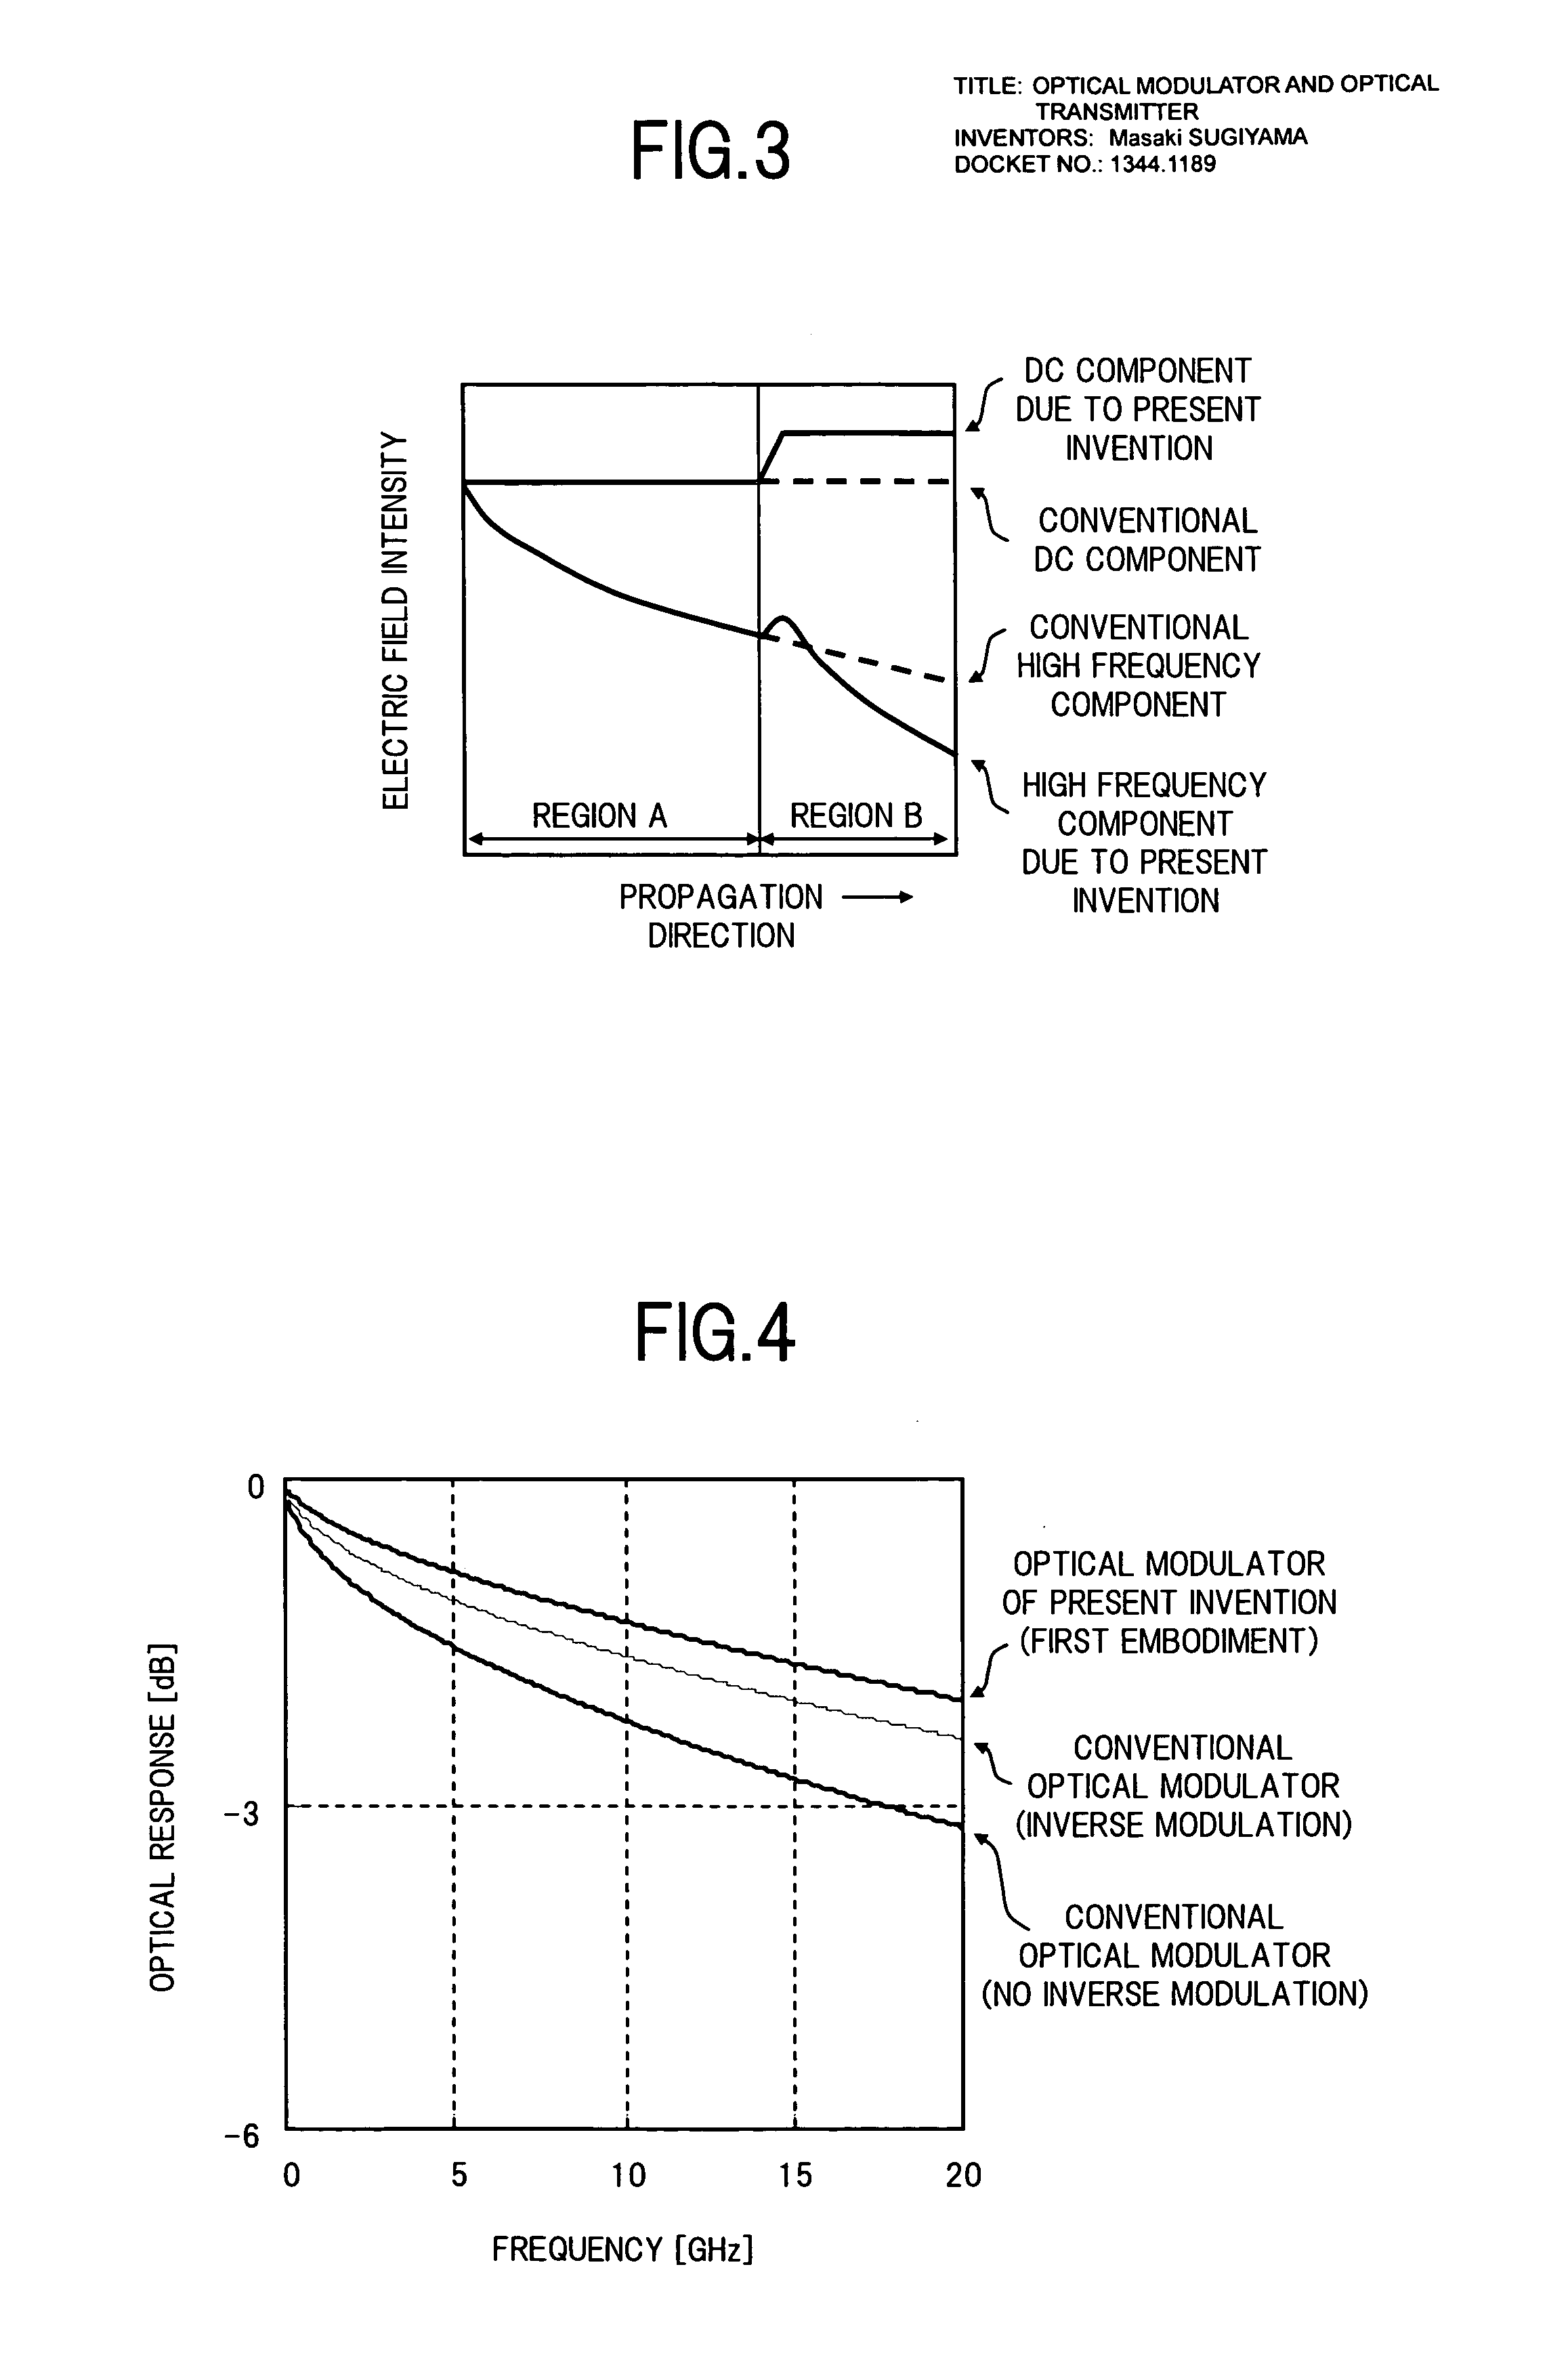 Optical modulator and optical transmitter